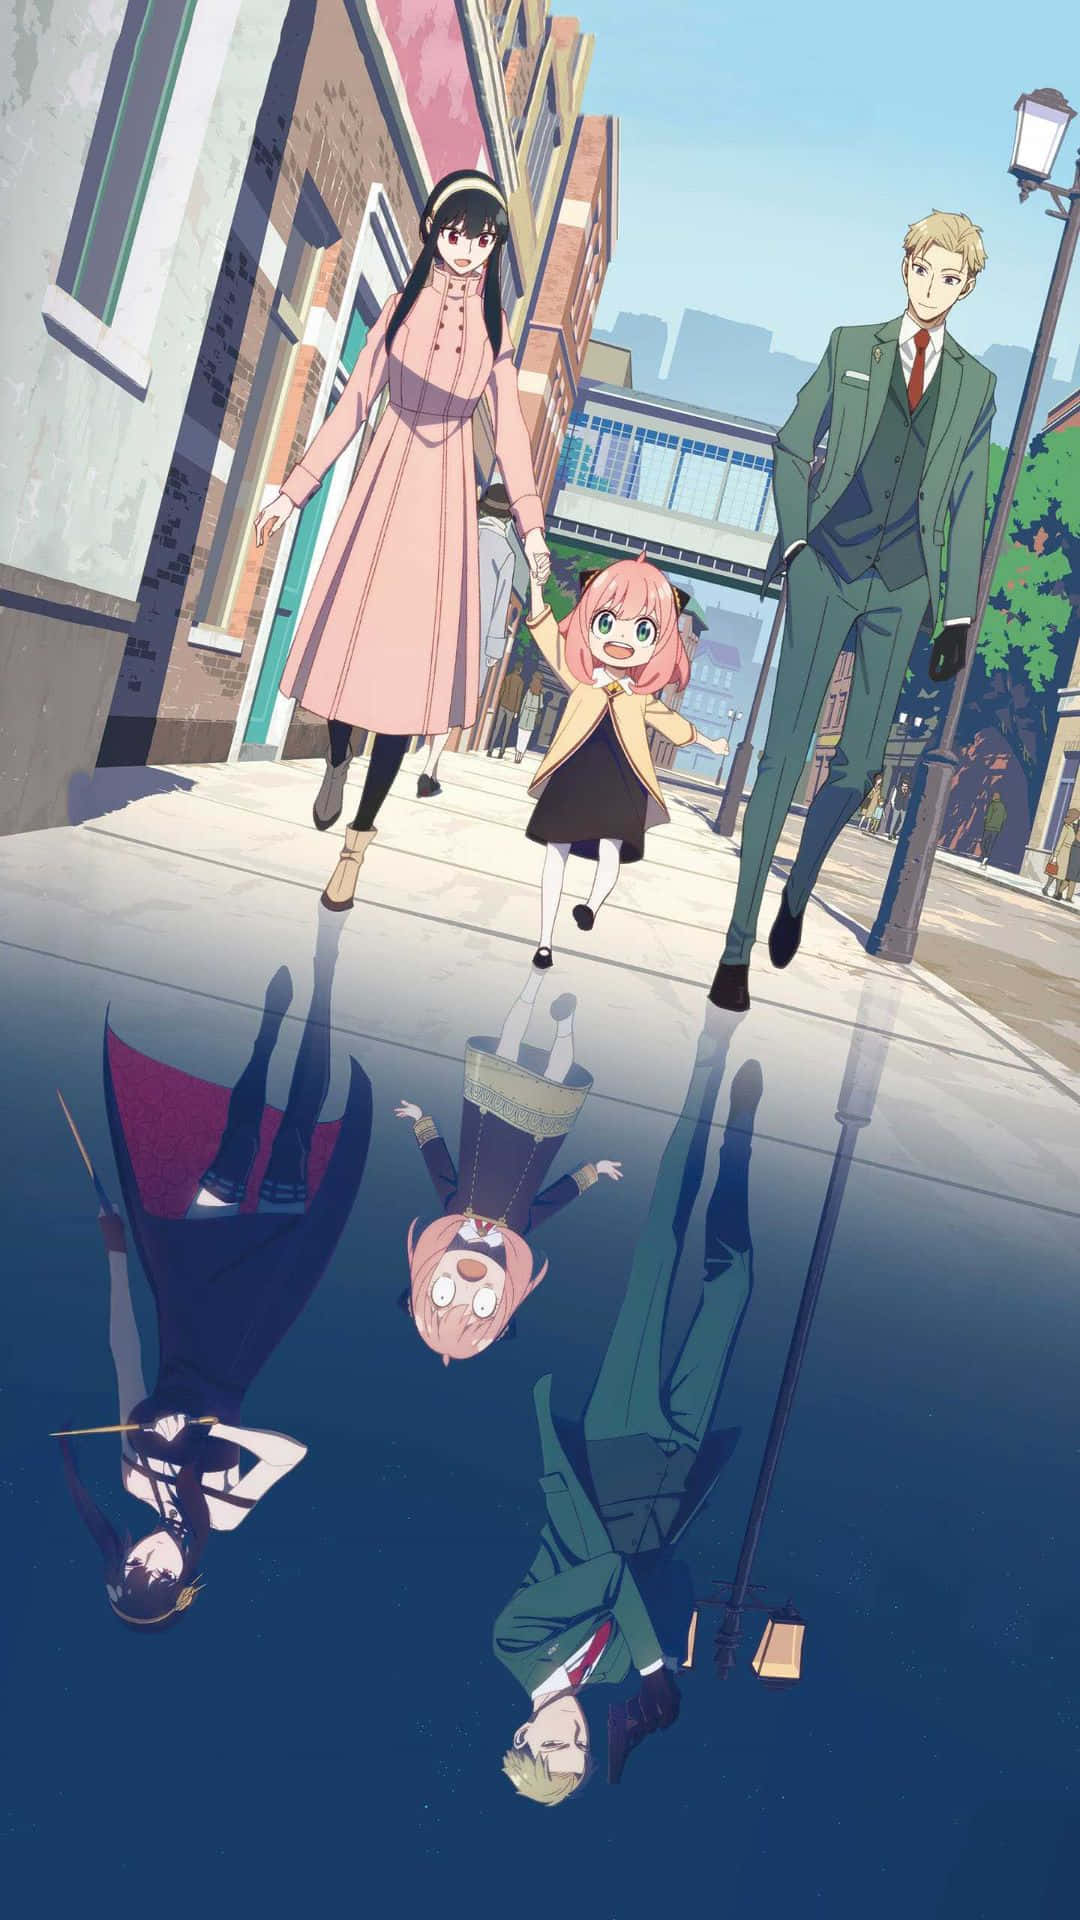 Umgrupo De Pessoas Caminhando Pela Rua Em Um Anime. Papel de Parede